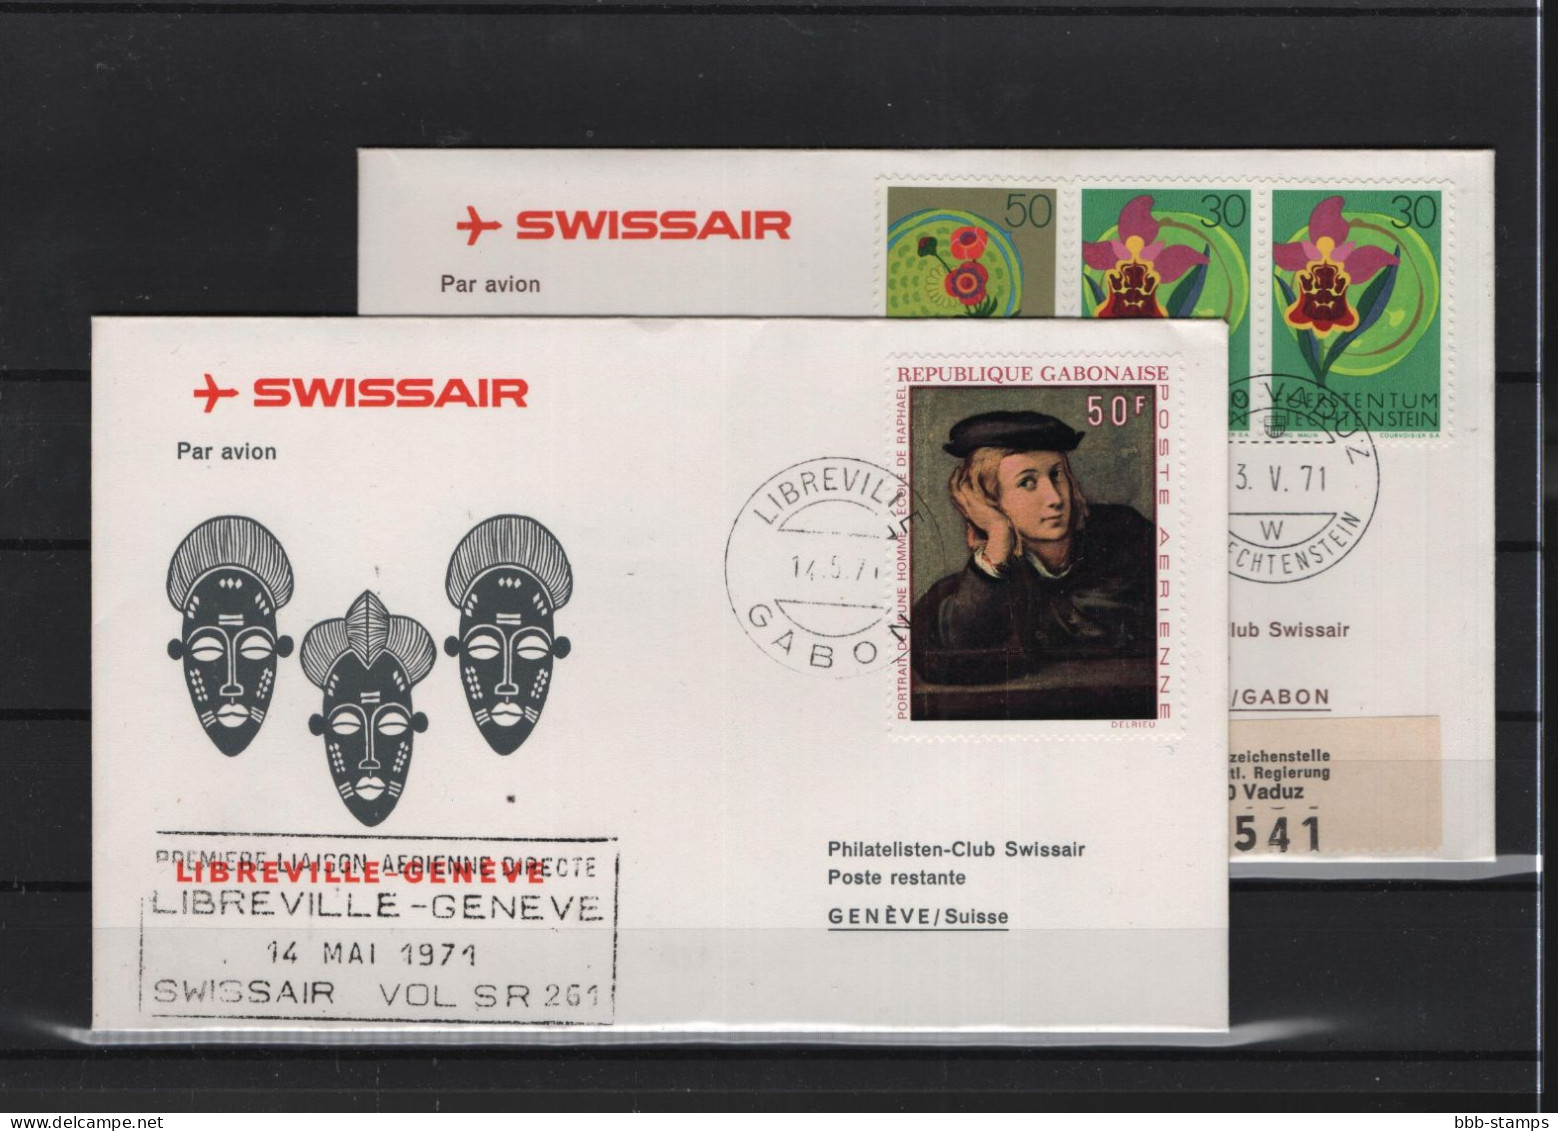 Schweiz Luftpost FFC Swissair 15.5.1971 Genf  Libreville VV - Primeros Vuelos